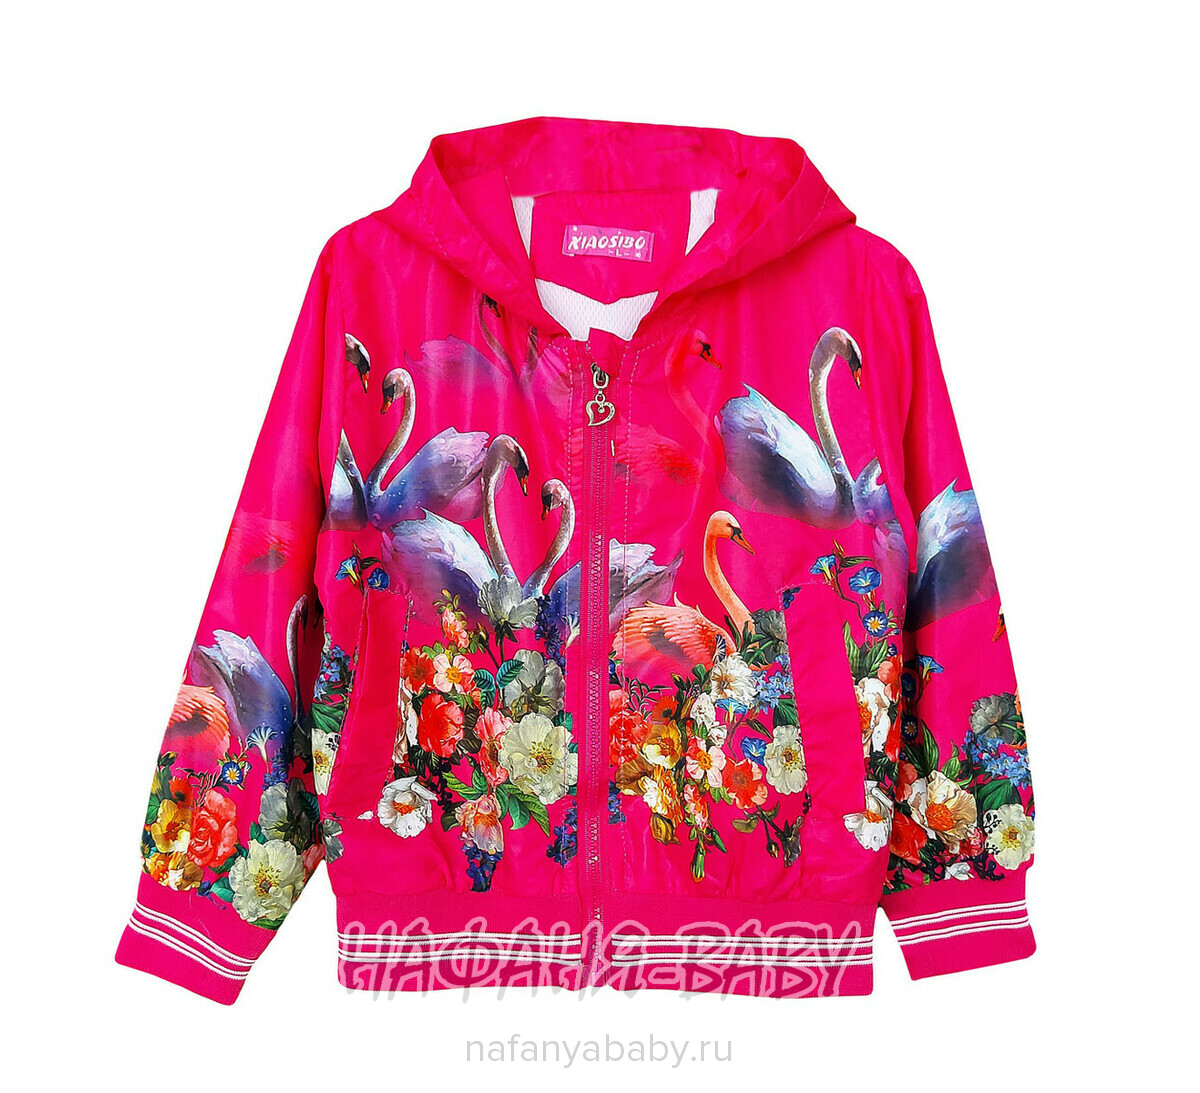 Детская куртка-ветровка XIAO SIBO, купить в интернет магазине Нафаня. арт: 1522.